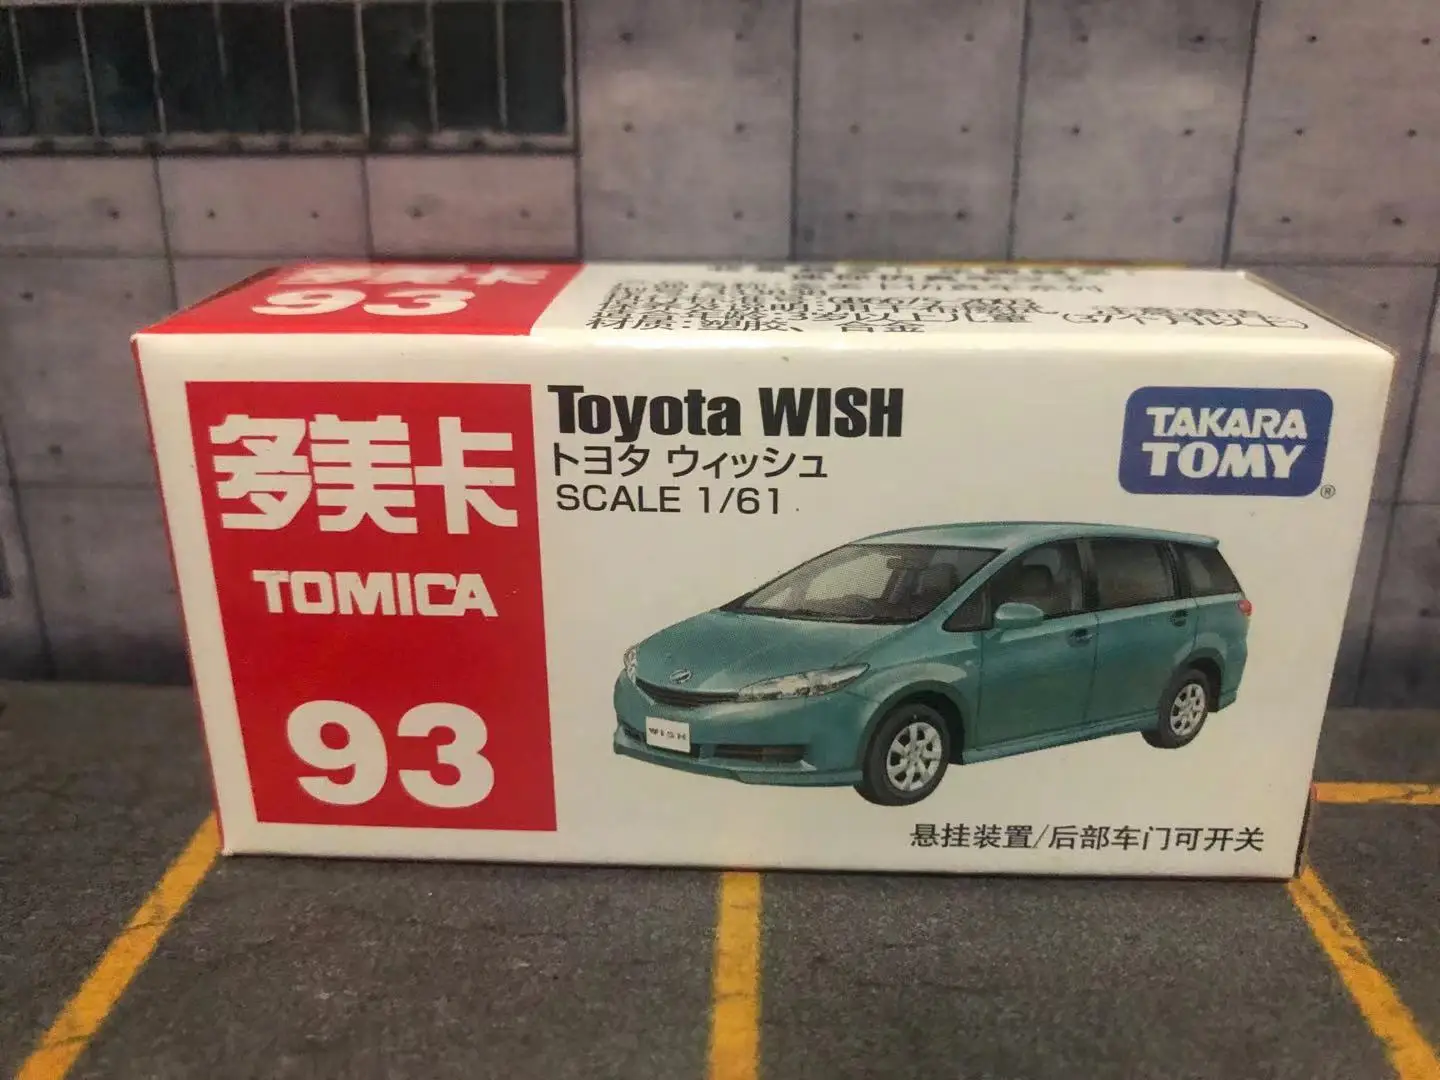 

TAKARA TOMY TOMICA Scale 1/61 Toyota WISH 93 литый под давлением металлический автомобиль Модель автомобиля игрушки подарки коллекции